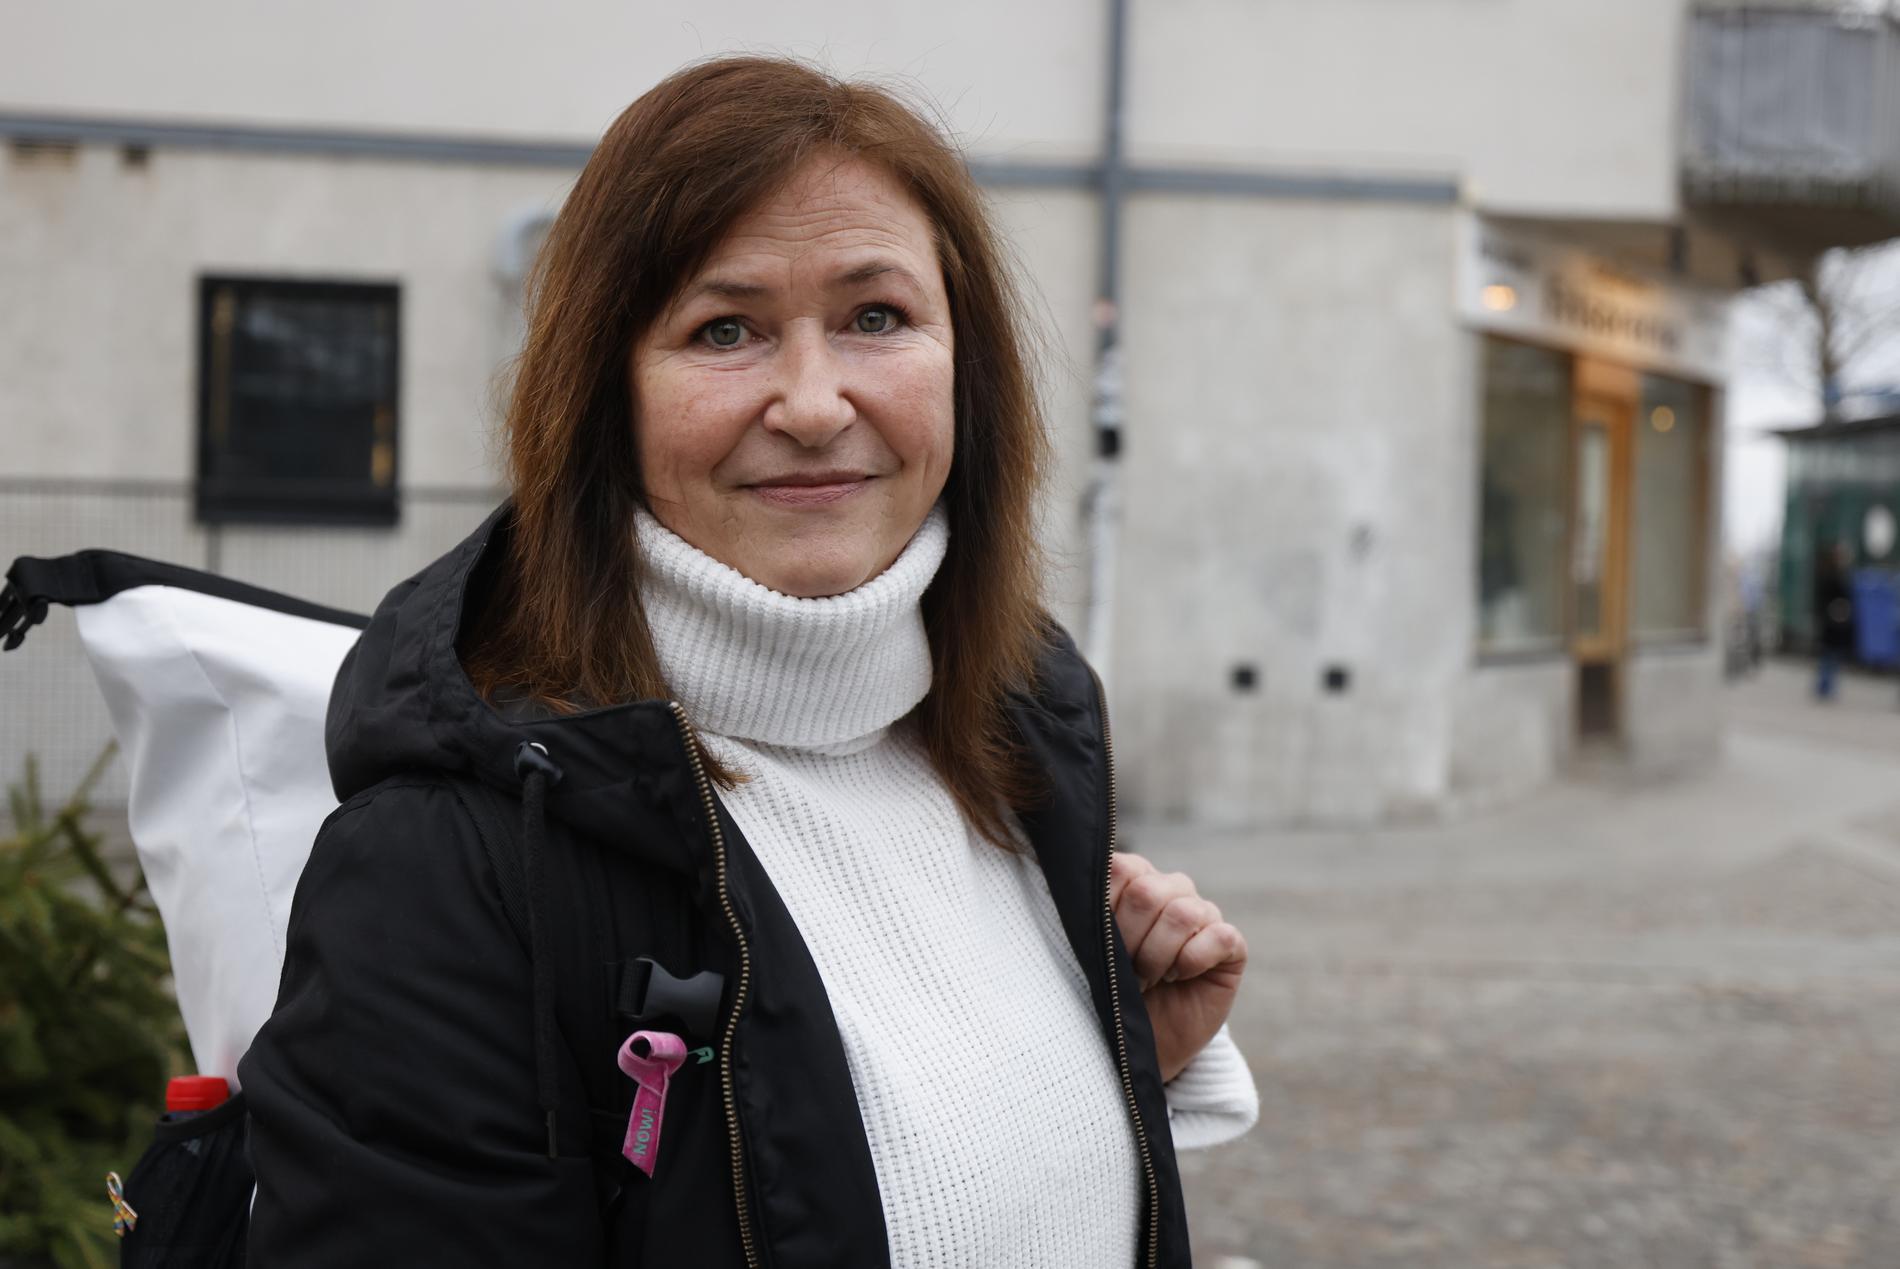 ”Det finns ju ingenstans där man skulle känna sig helt trygg i Stockholm”, säger Christina Steen.